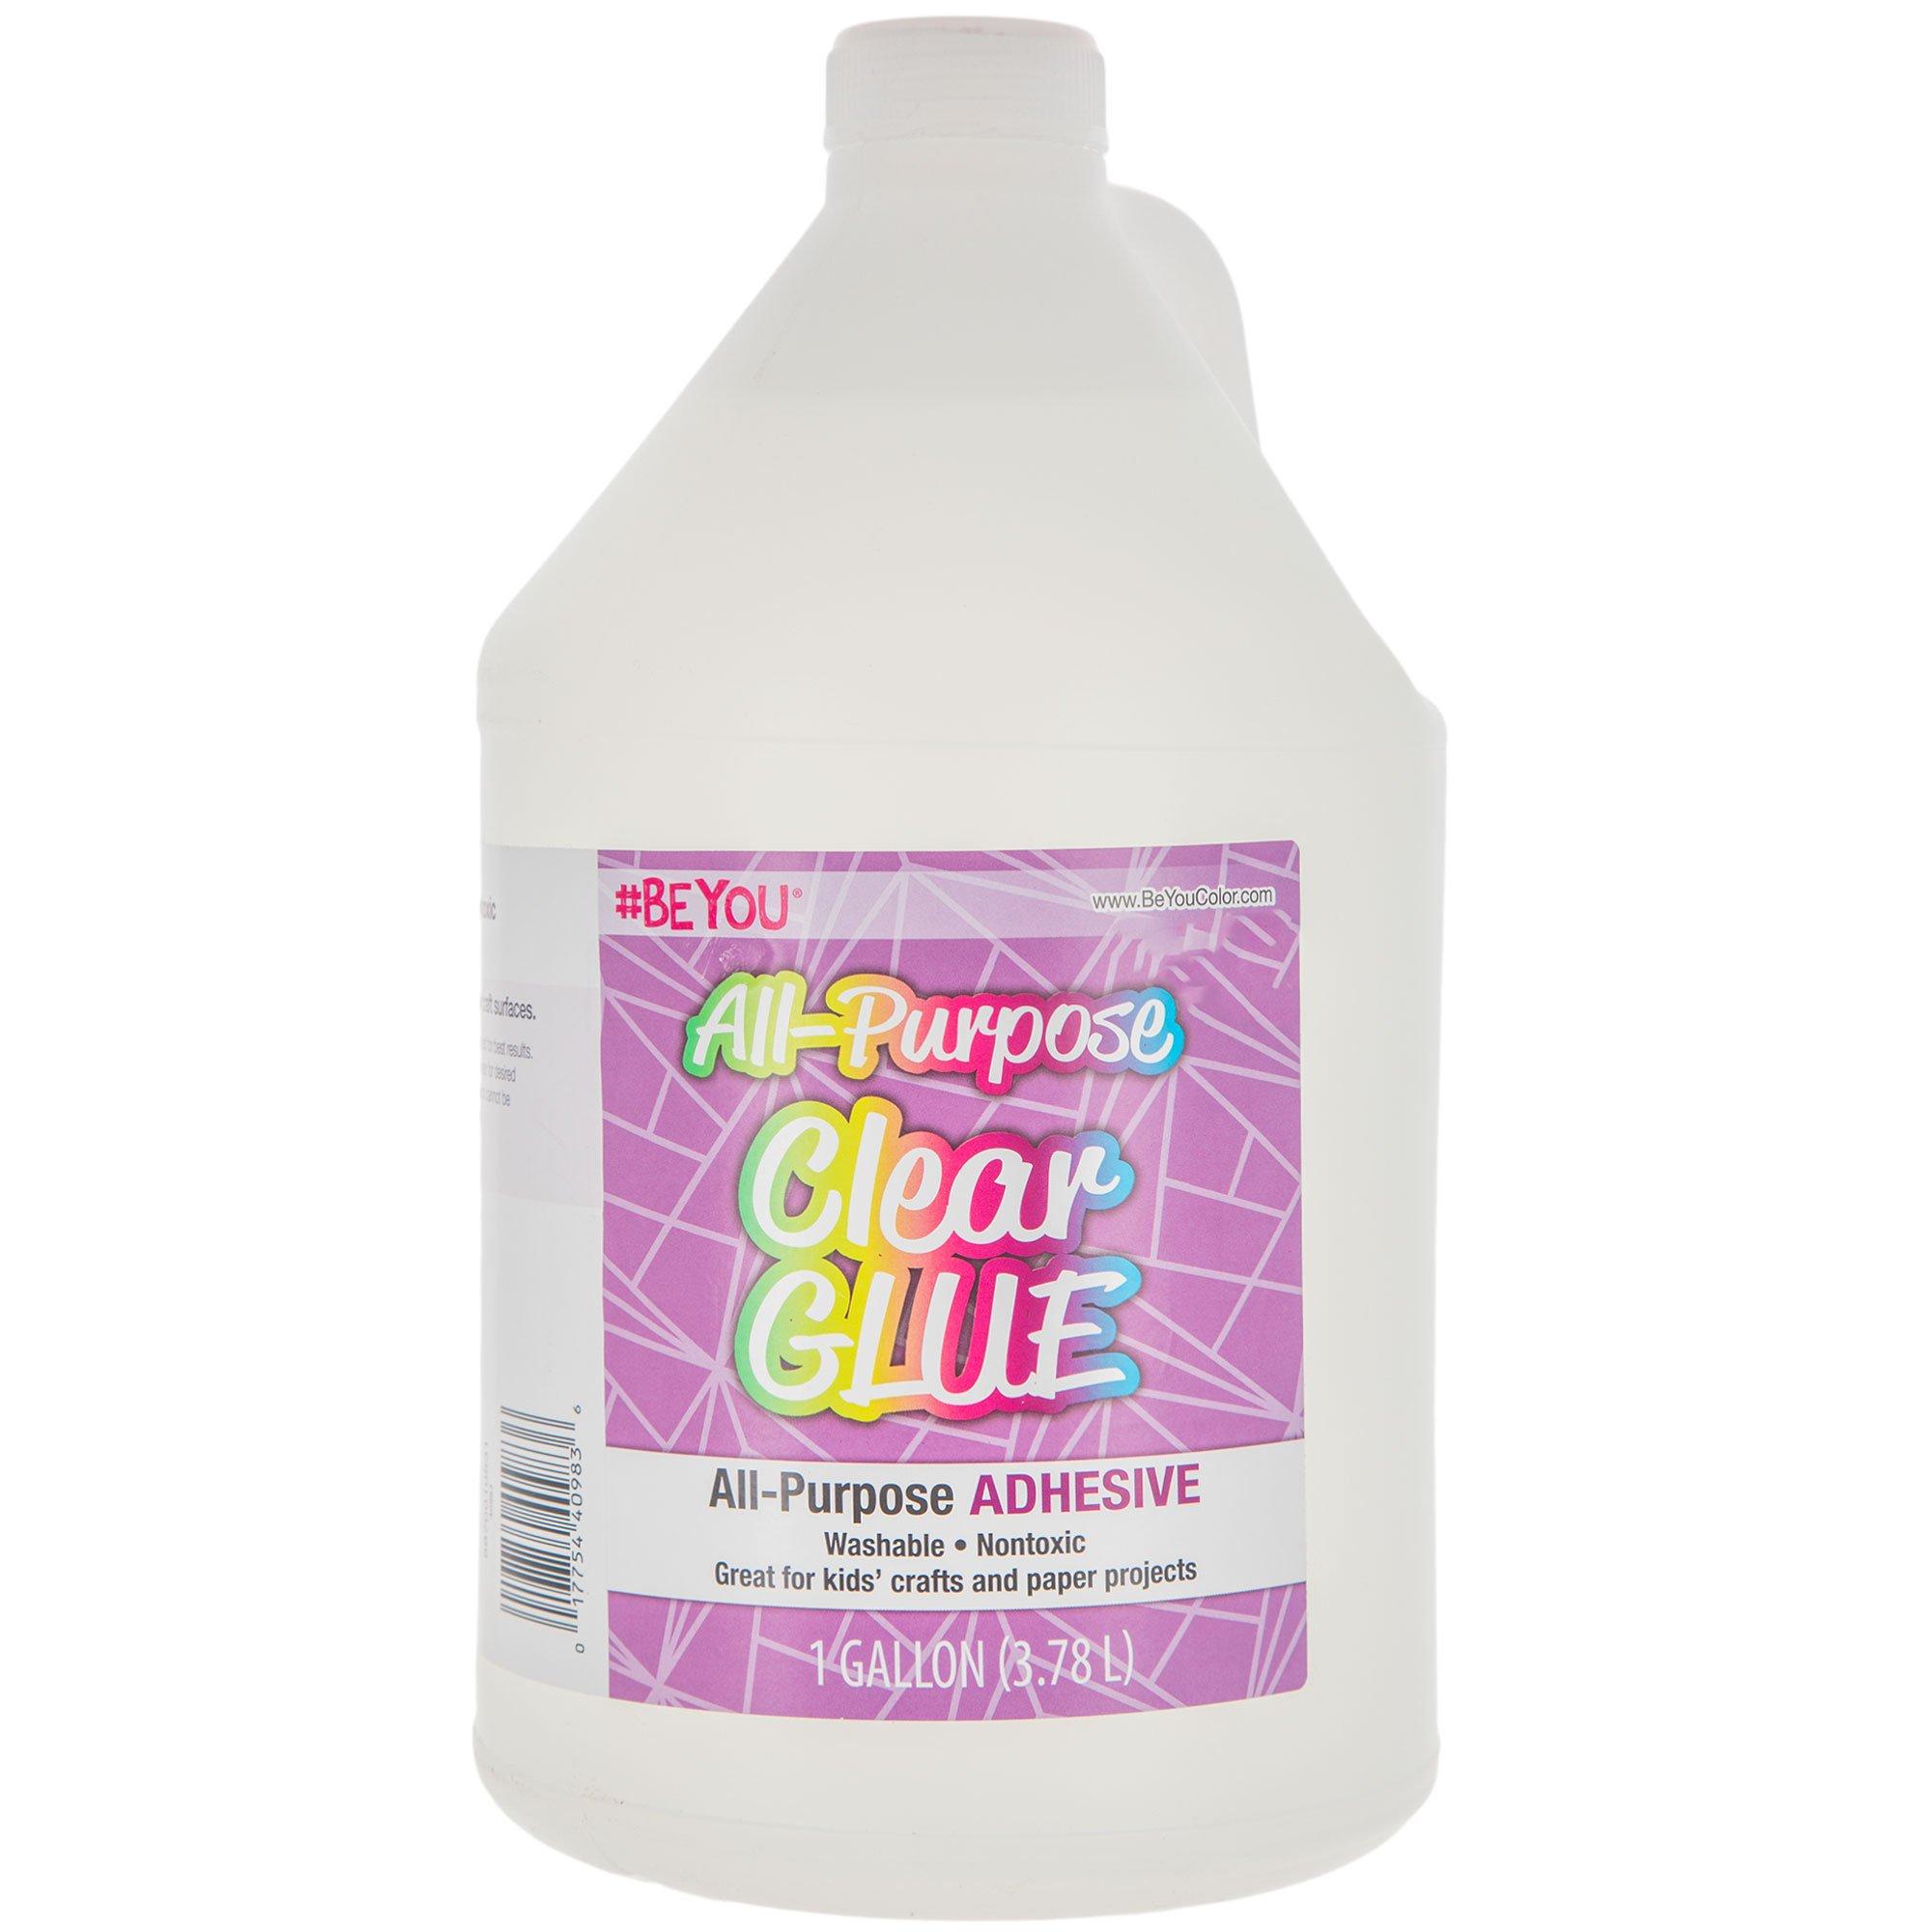 Slime Glue 1/2 Gallon Clear Glue 1/2 Gallon White Glue 2 Pack